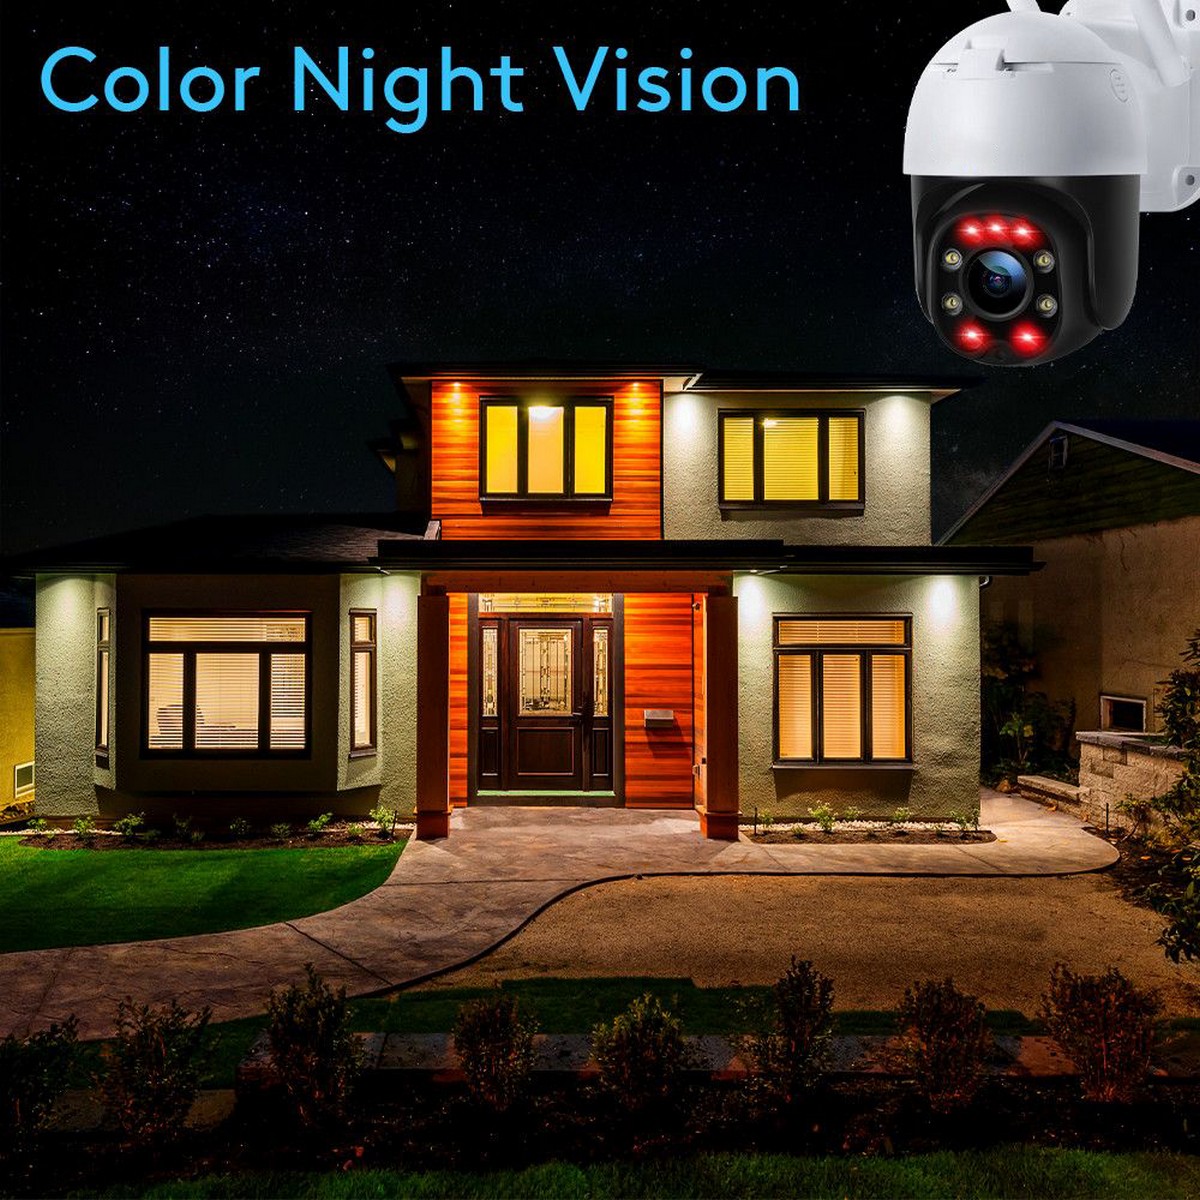 telecamera di sicurezza ip per visione notturna - led infrarossi colorati